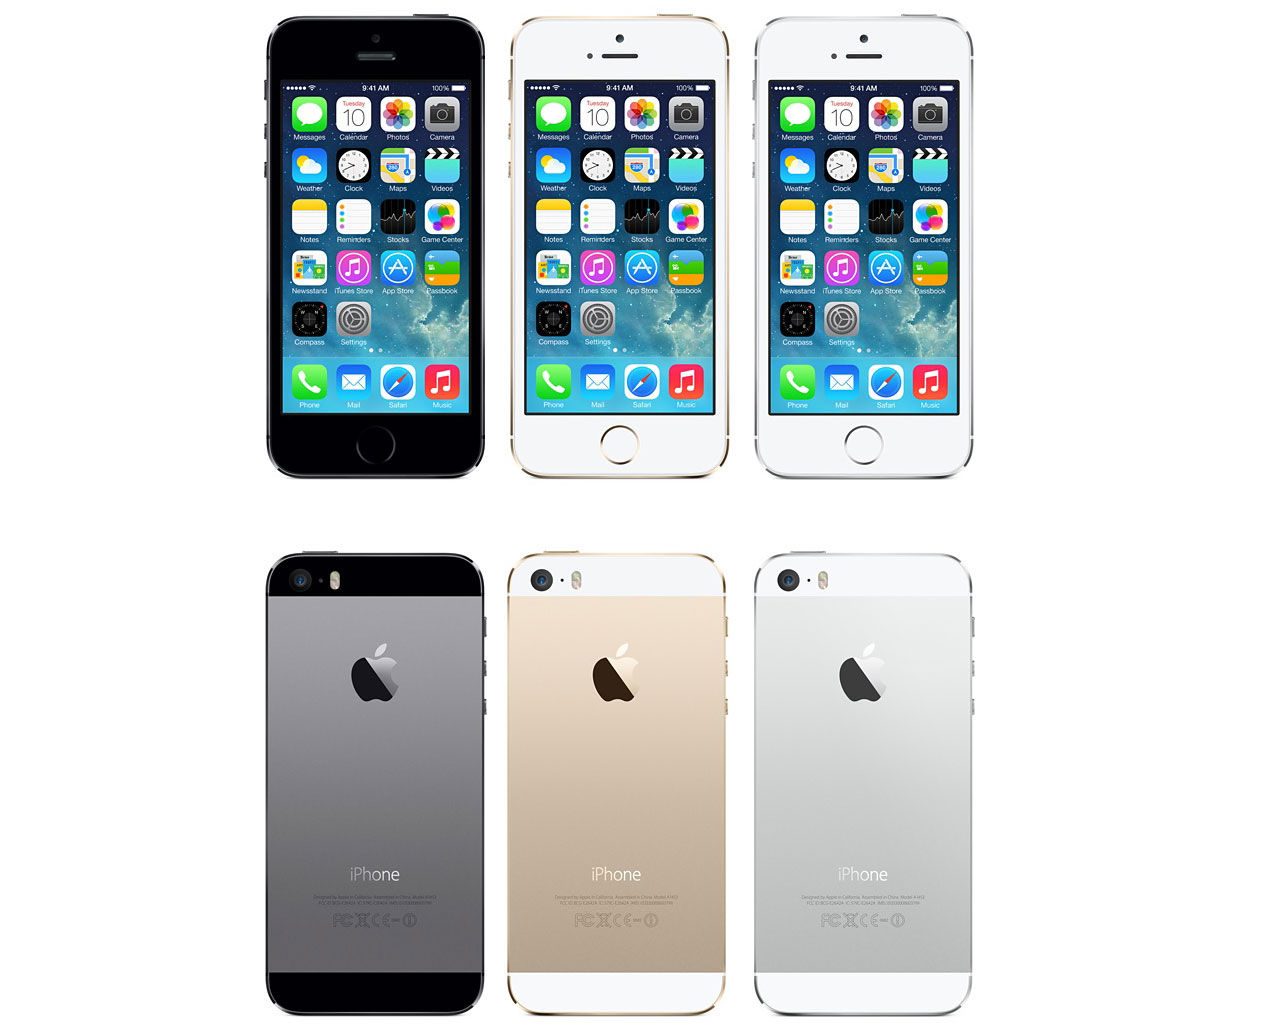 iPhone 5s kommer i tre olika färger